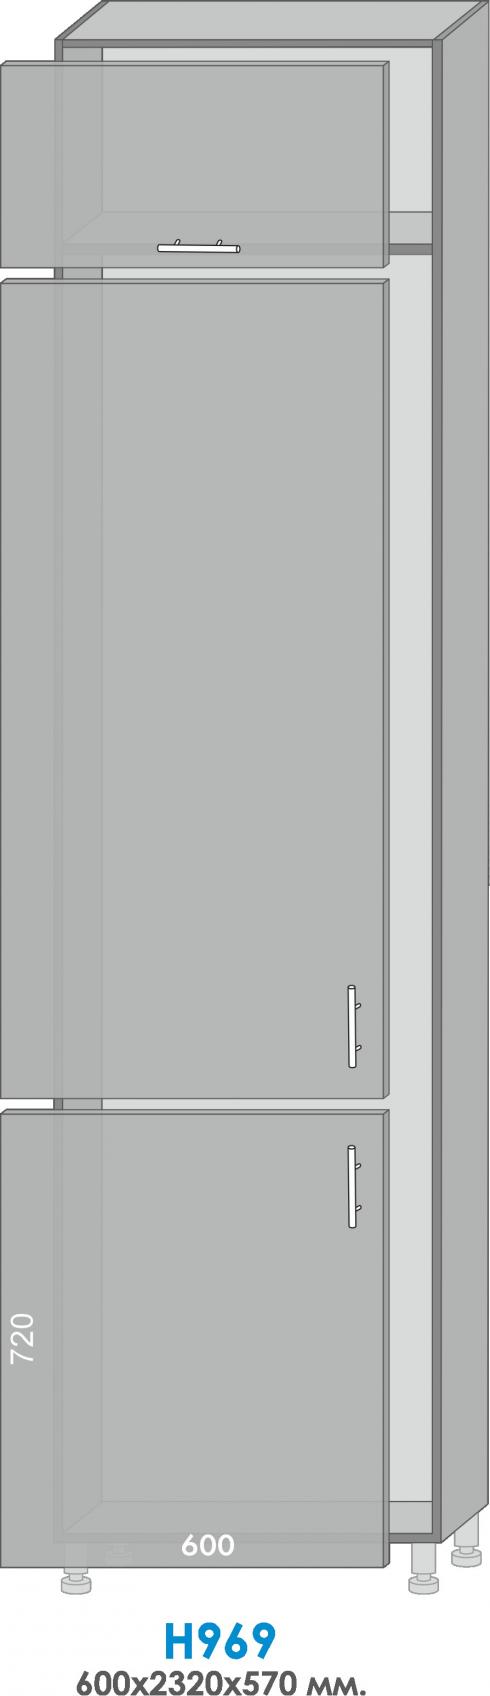 Пенал Н969 холодильник вітрина (600/2320/570)